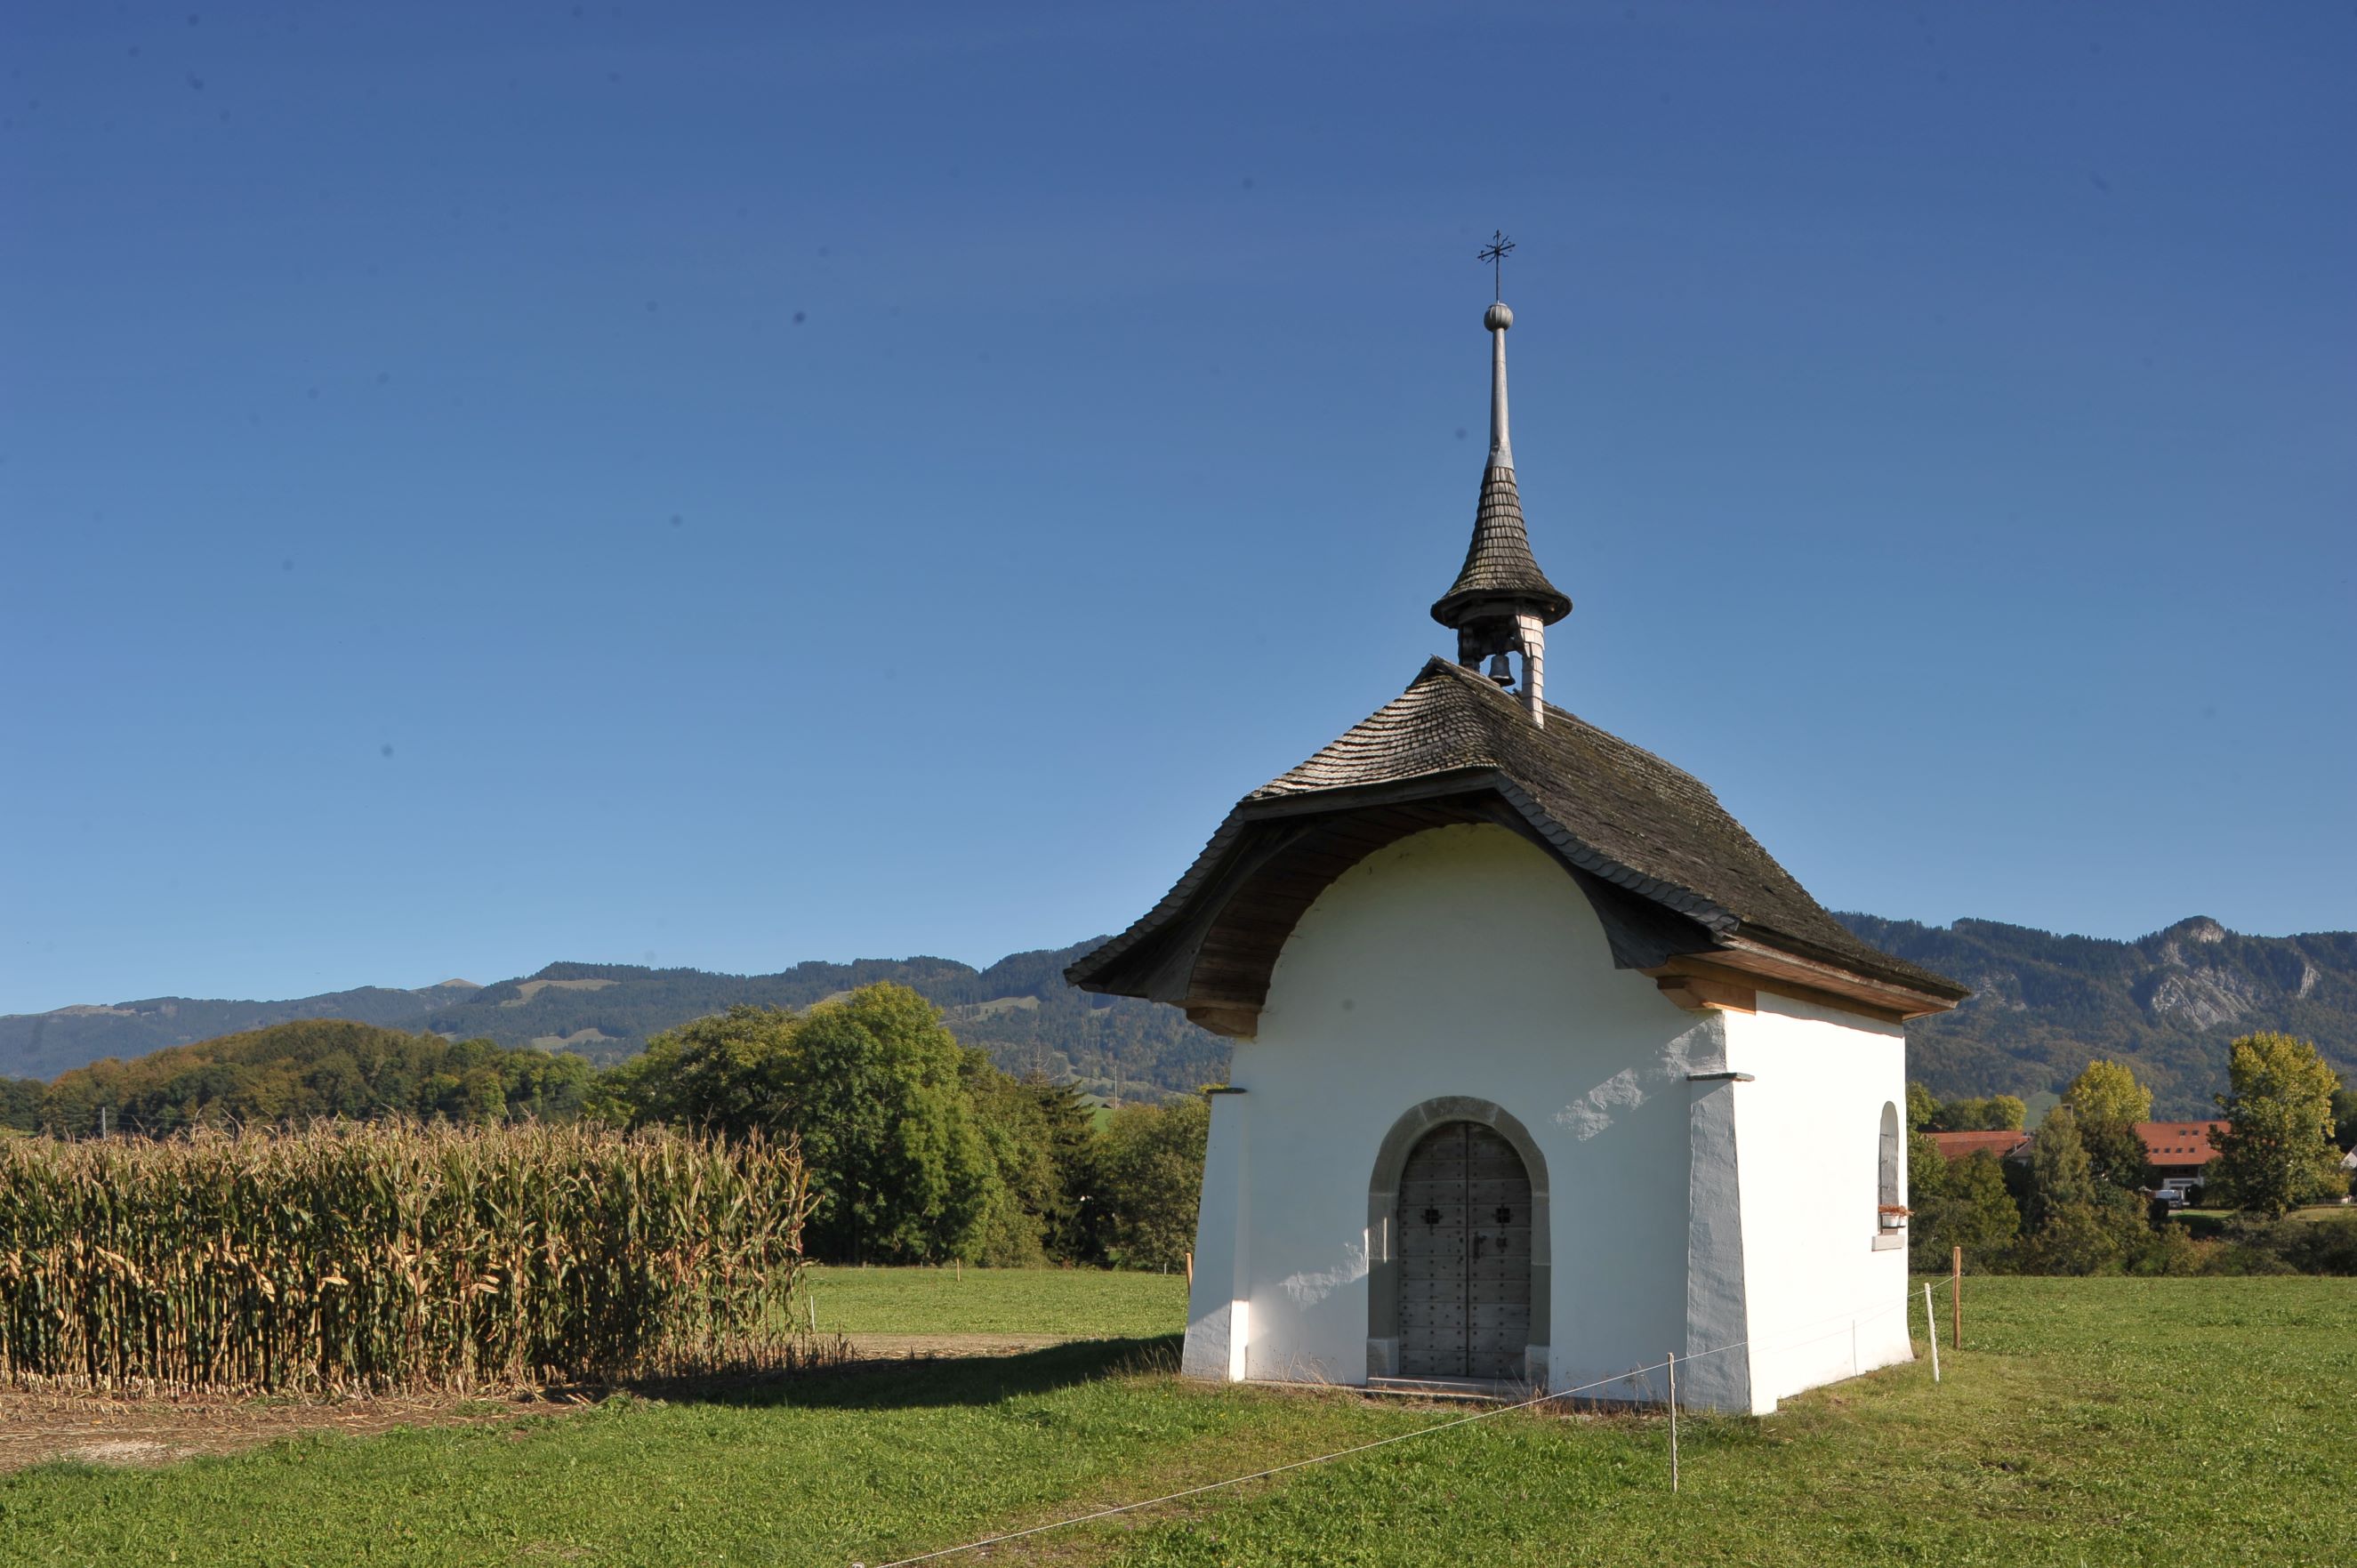 La chapelle Saint-Garin (datée 1670) dans les champs d’Écharlens, fragment baroque du paysage sacré gruérien